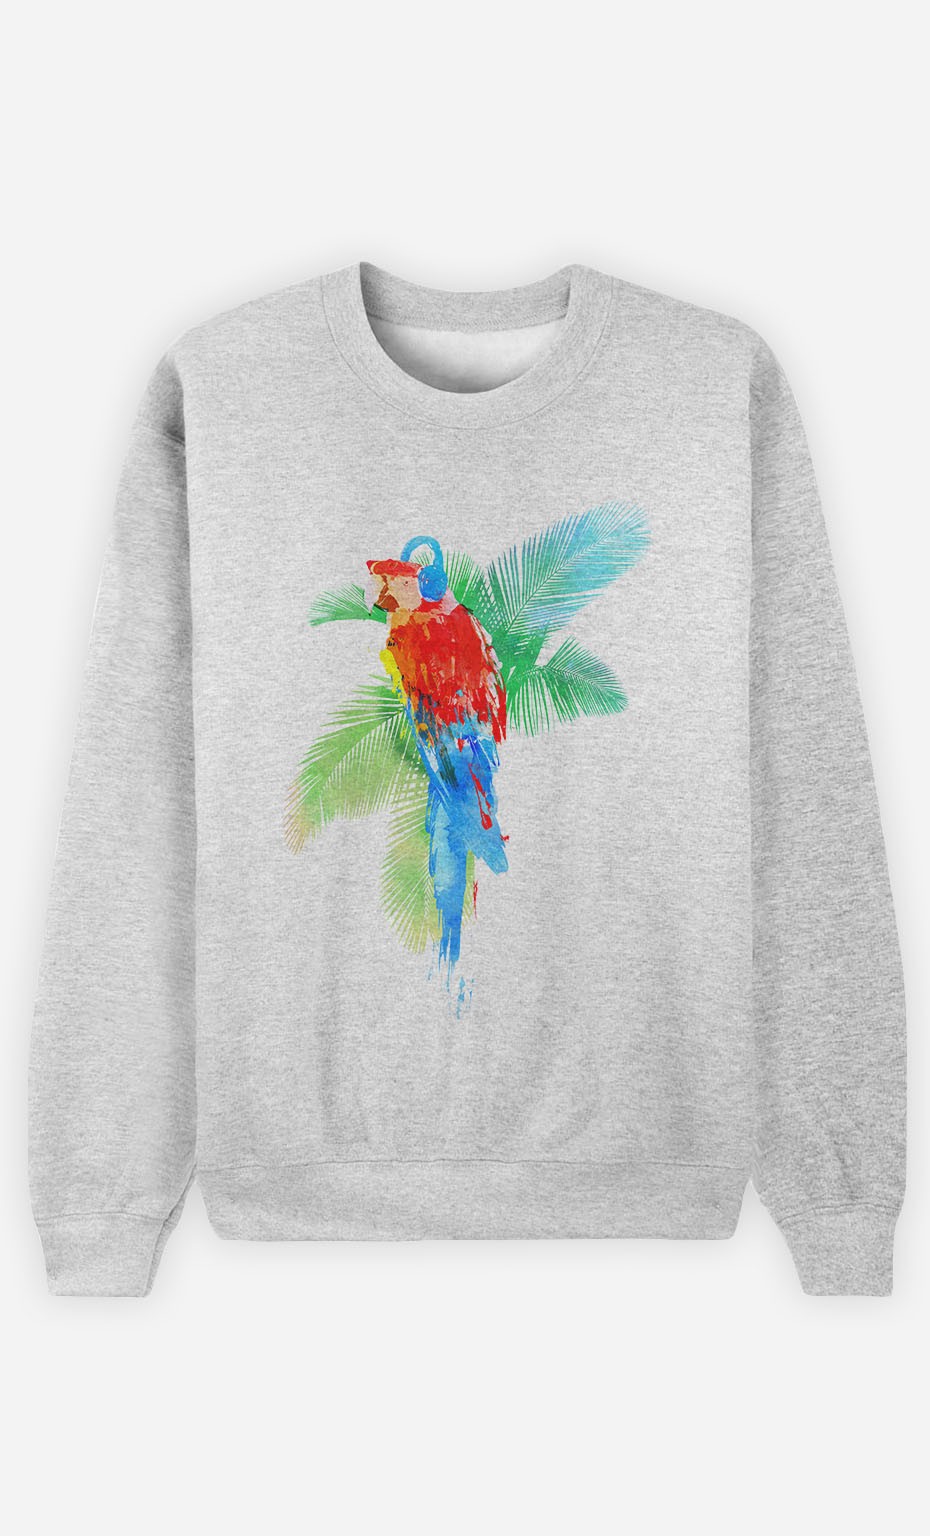 Sweatshirt Parrot Party